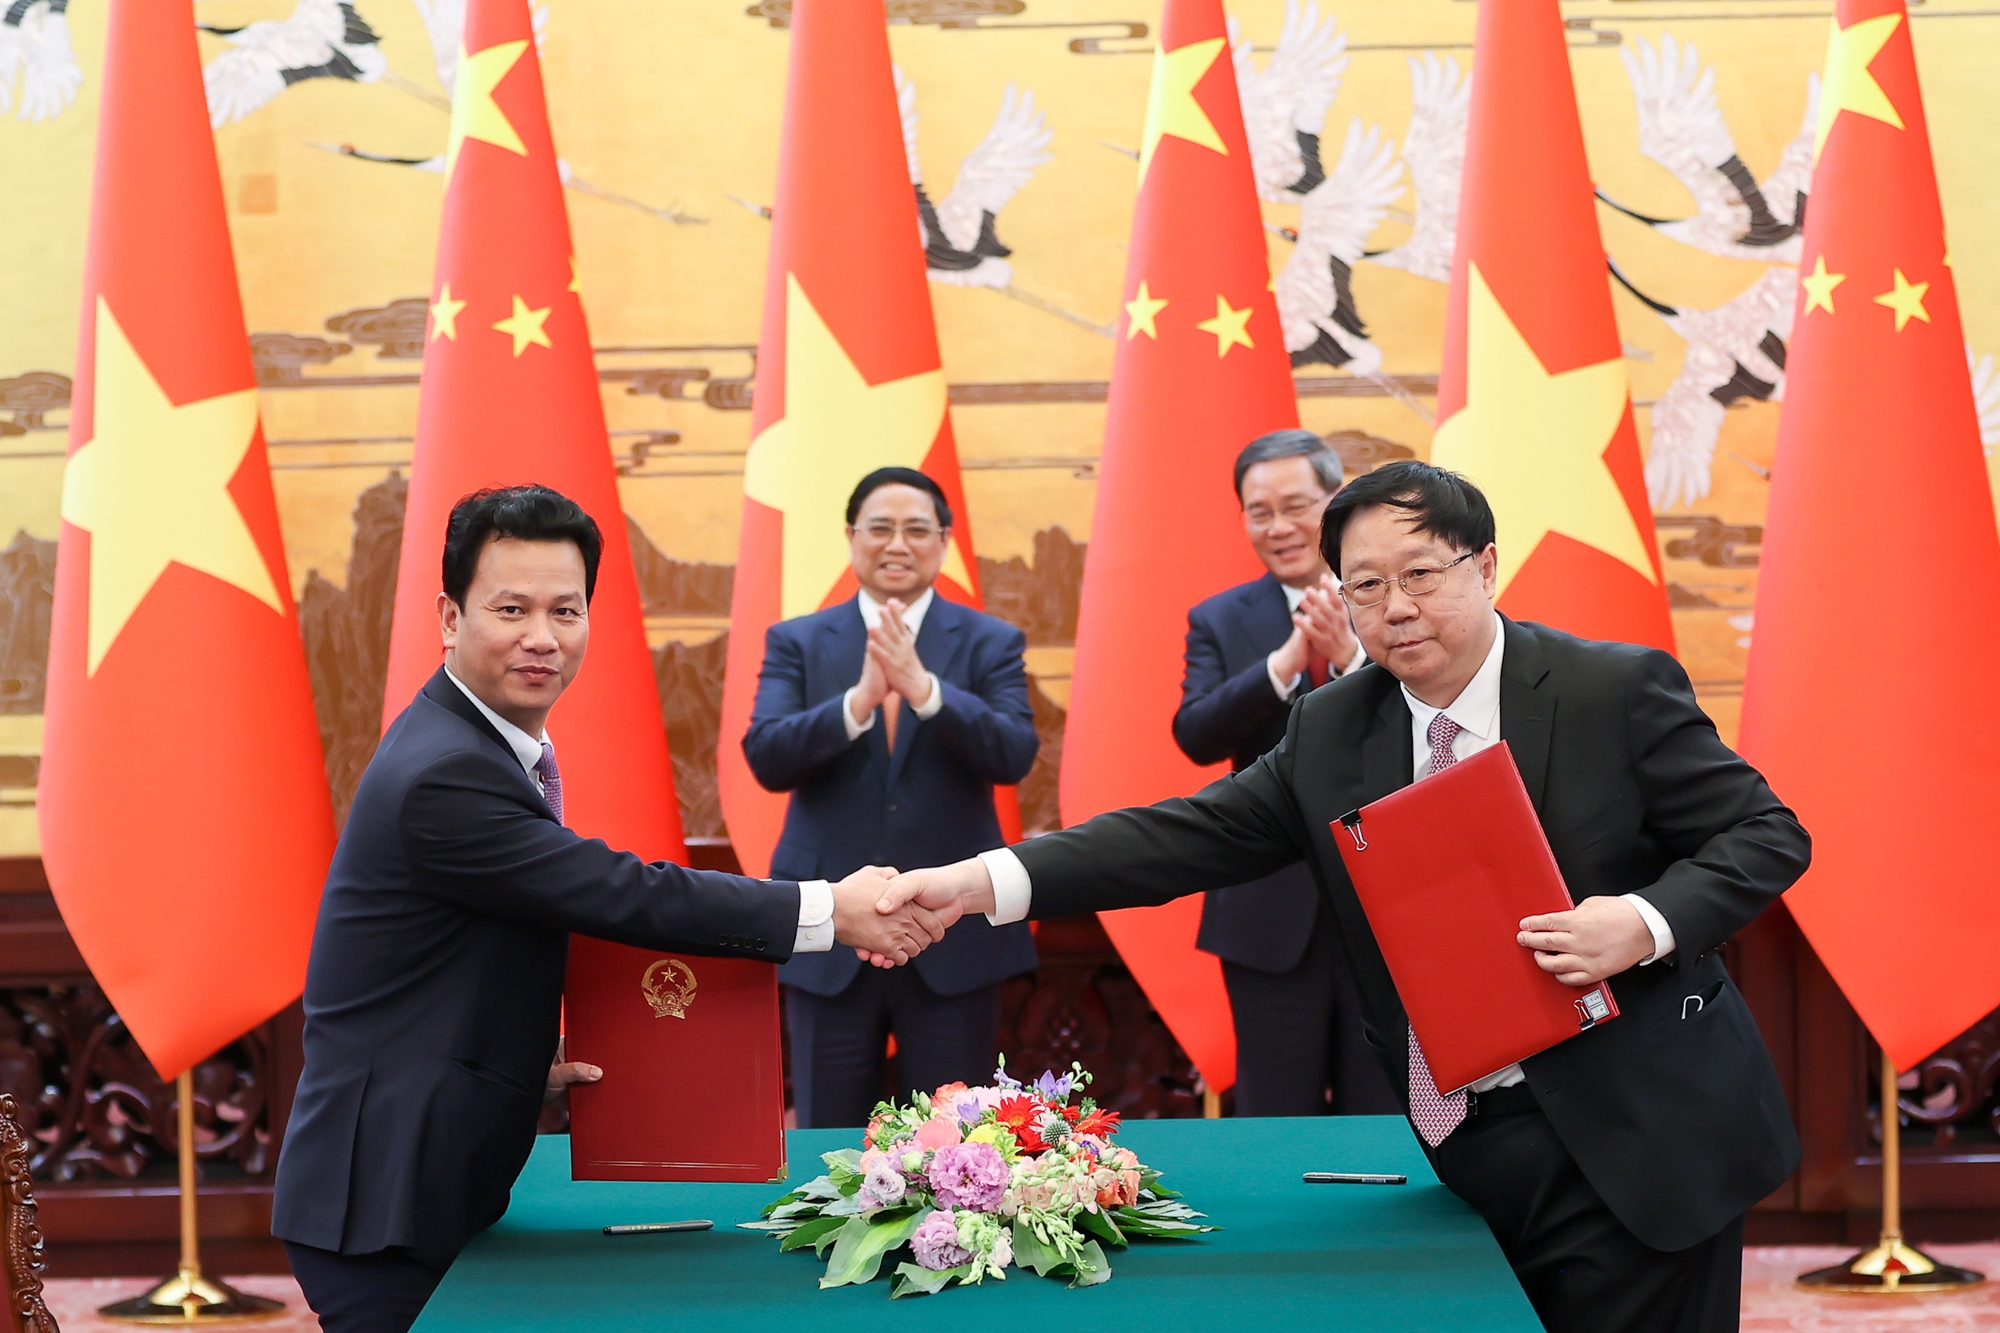 Hai Thủ tướng chứng kiến lễ ký và trao Thỏa thuận hợp tác nghiên cứu quản lý tổng hợp môi trường biển và hải đảo vùng Vịnh Bắc Bộ giữa Bộ Tài nguyên và Môi trường Việt Nam và Bộ Tài nguyên Thiên nhiên Trung Quốc - Ảnh: VGP/Nhật Bắc